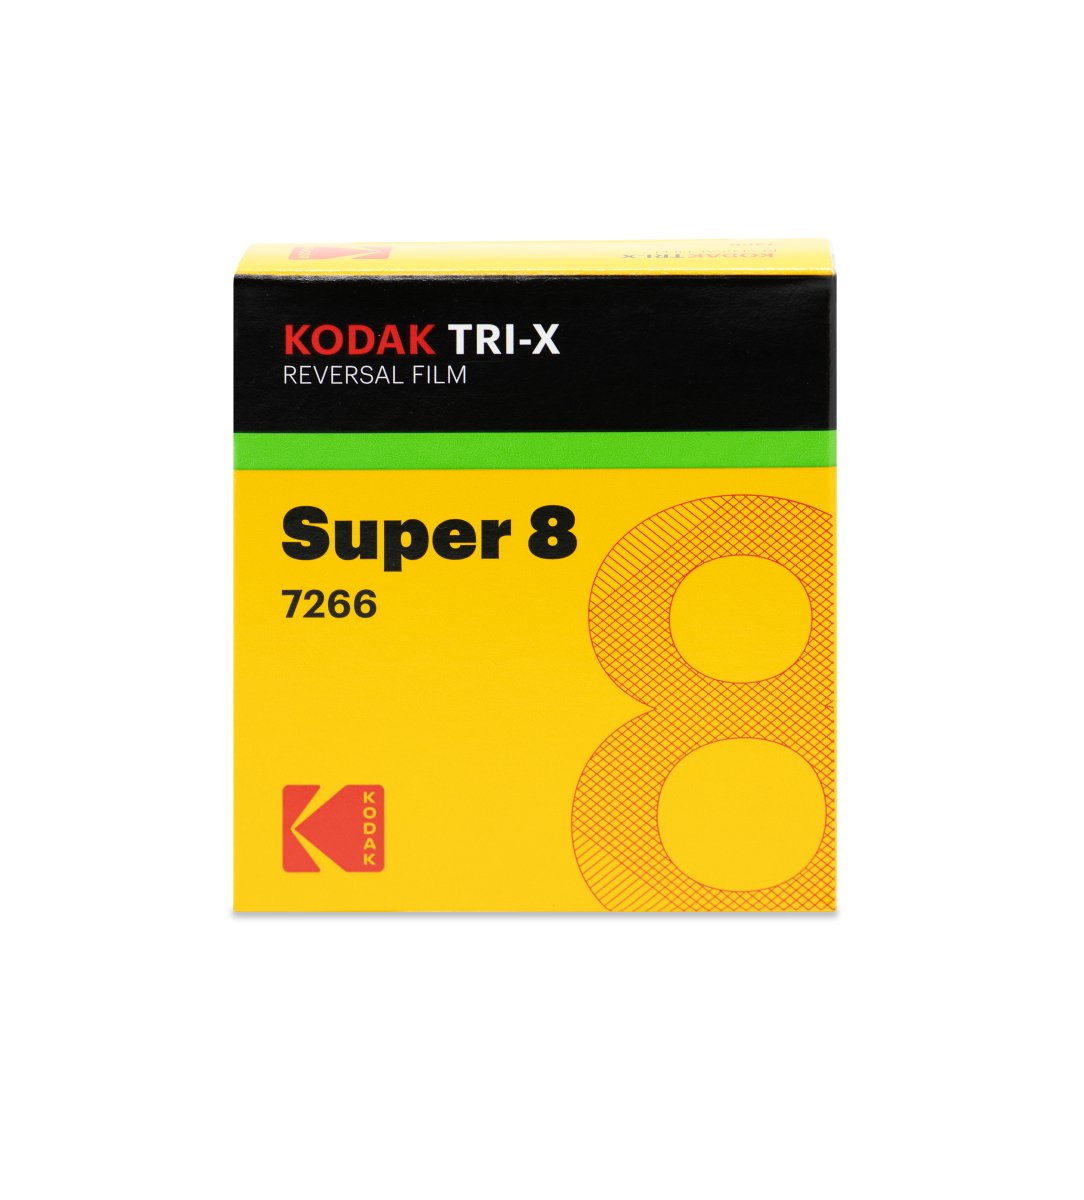 Kodak Film Tri-X Black-and-White Reversal Film - Super 8 - 50' Roll - Rewind Photo Lab - Kodak